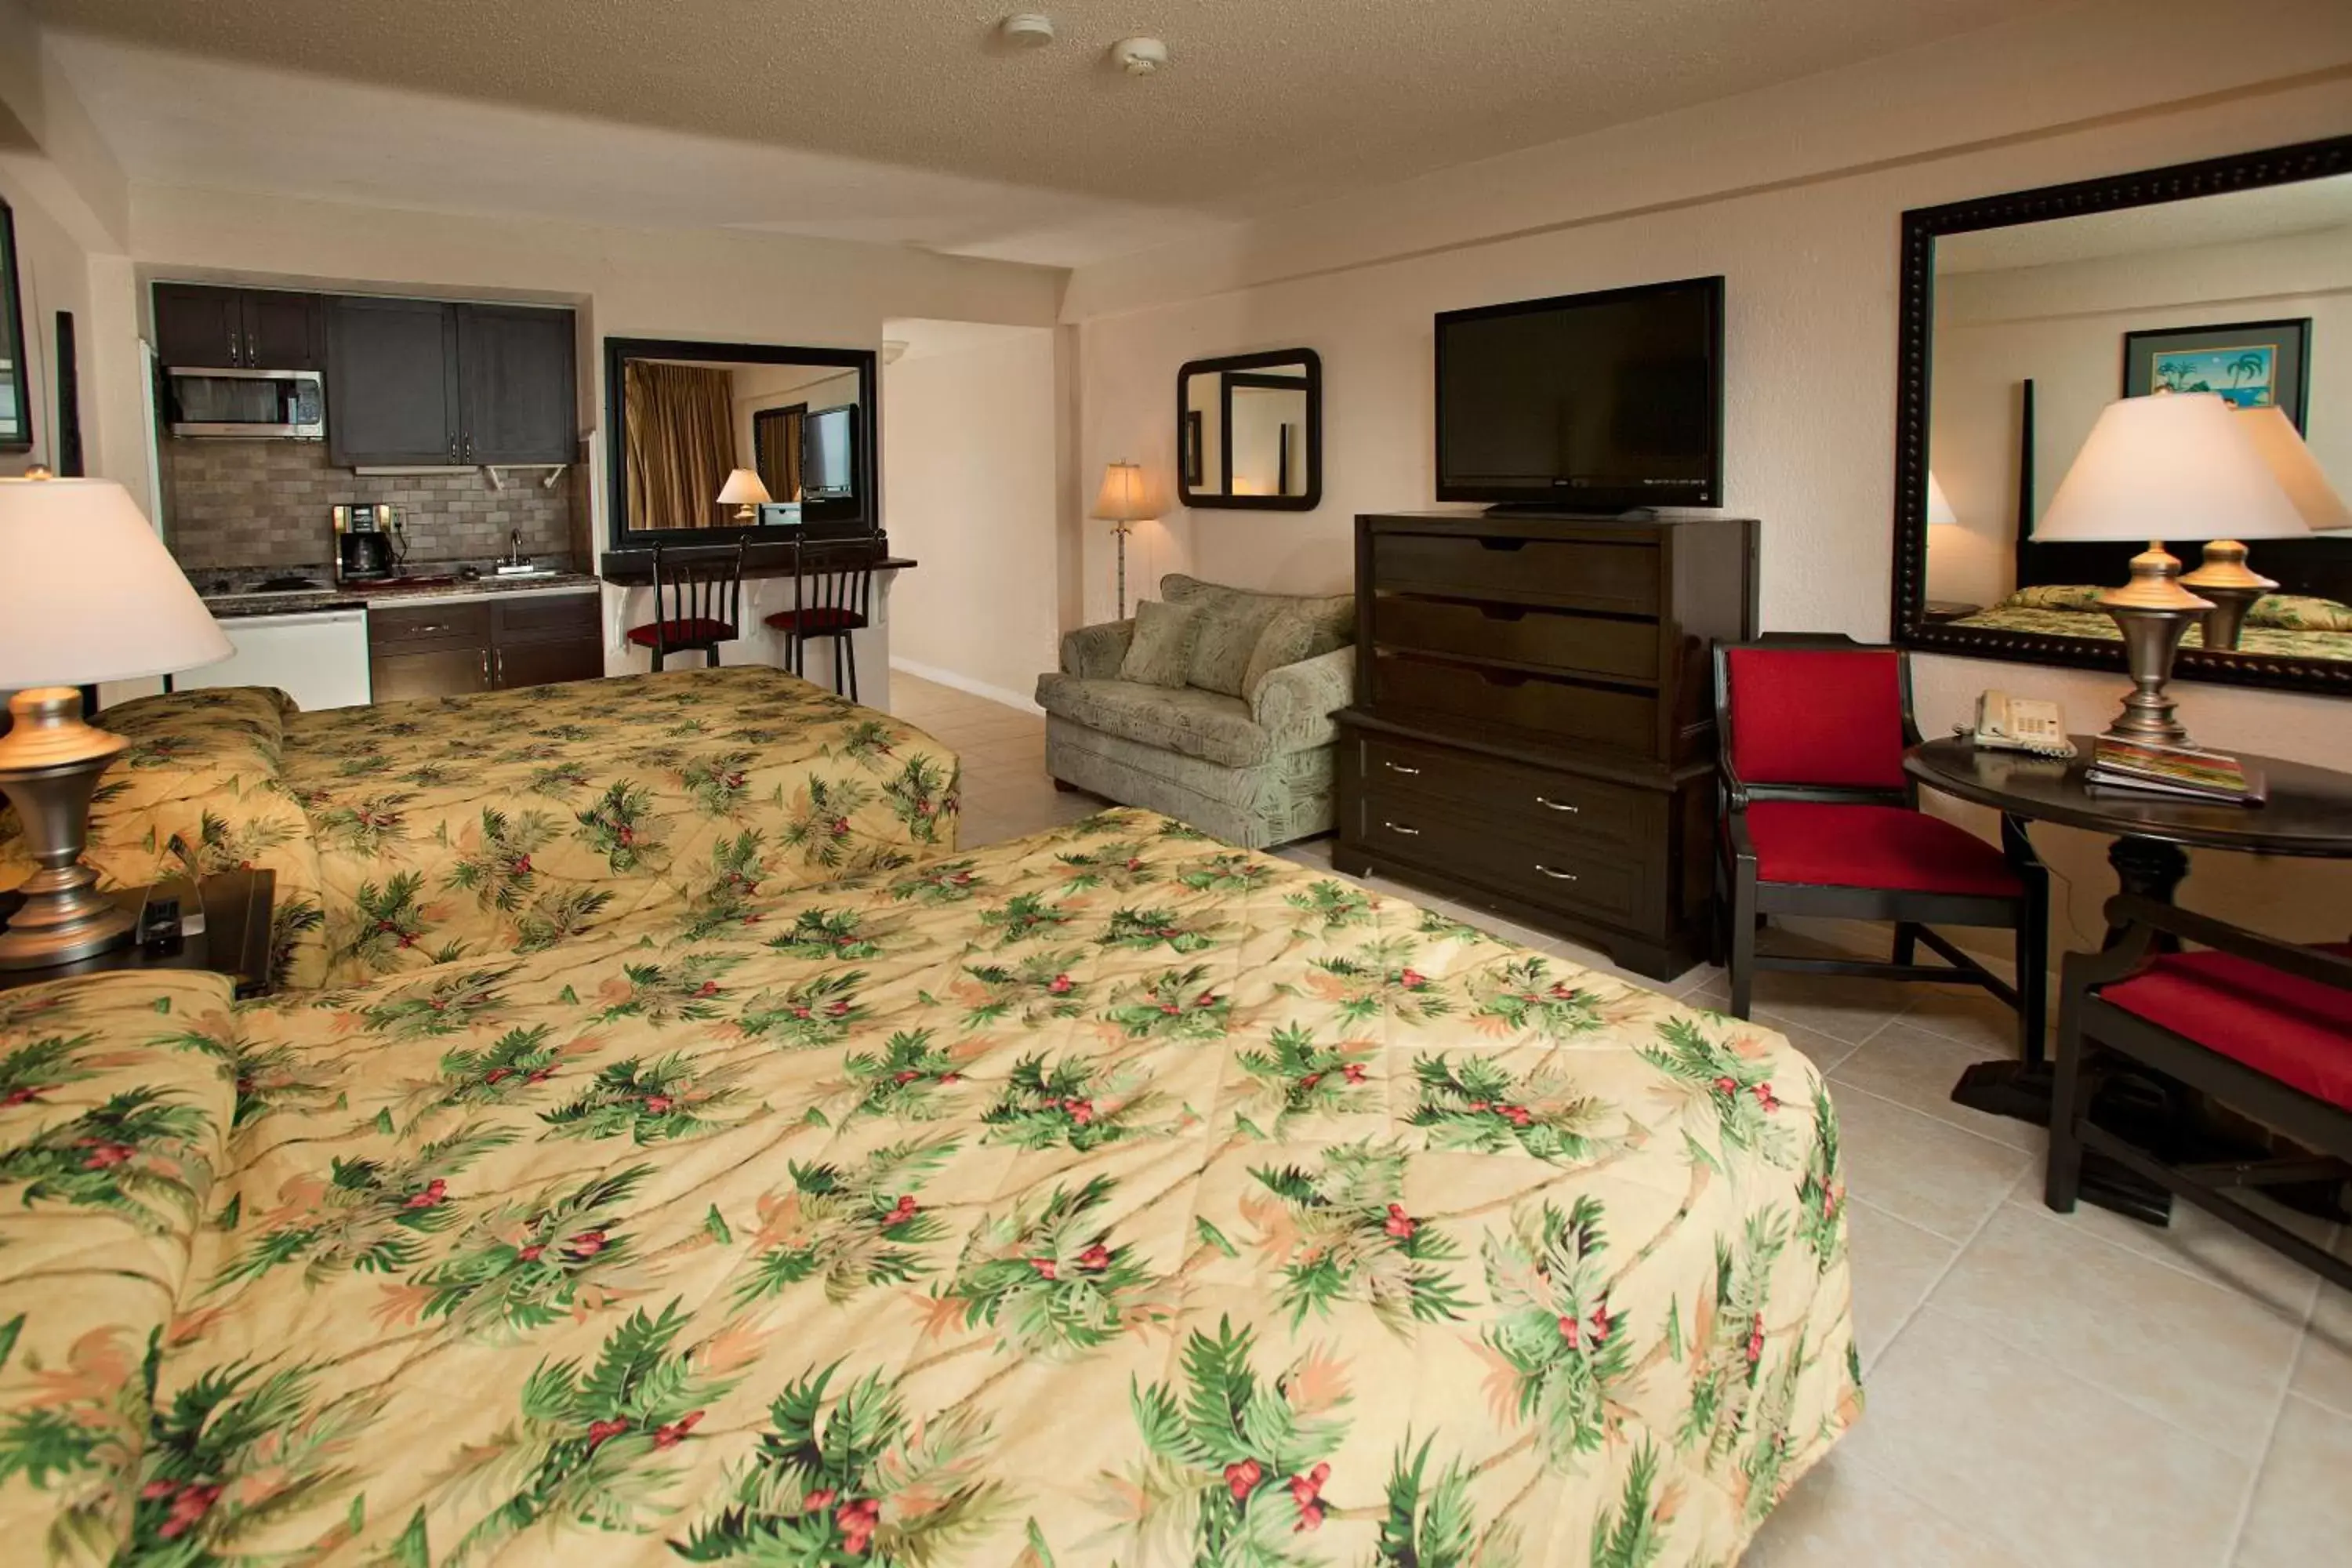 Bedroom, Room Photo in Daytona Beach Hawaiian Inn